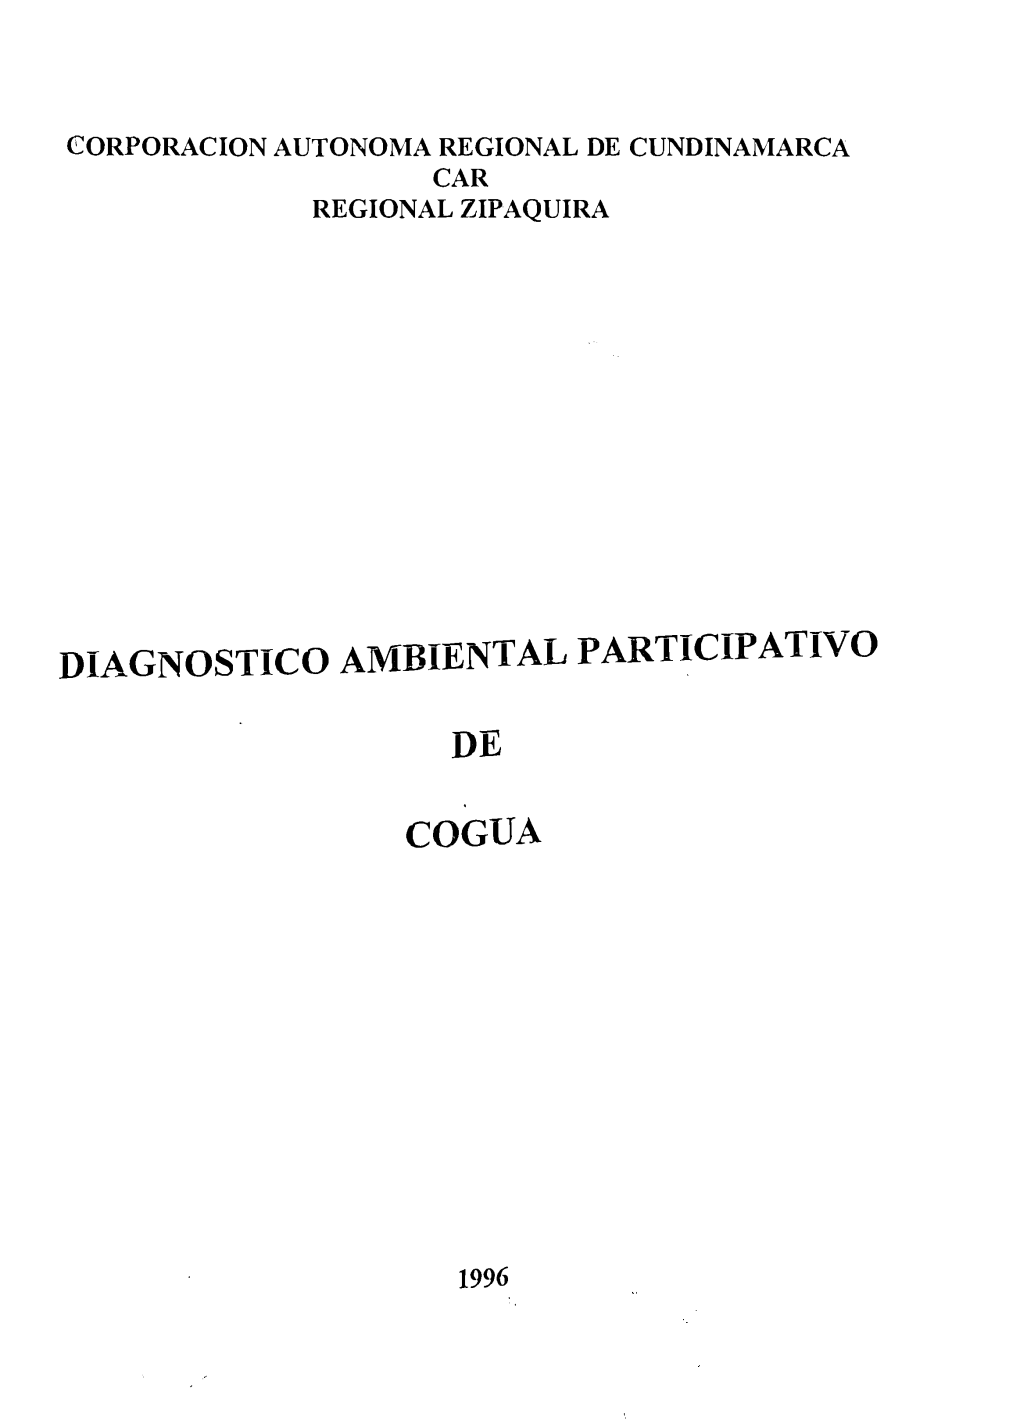 DIAGNOSTICO AMBIENTAL Participativ O DE COGUA